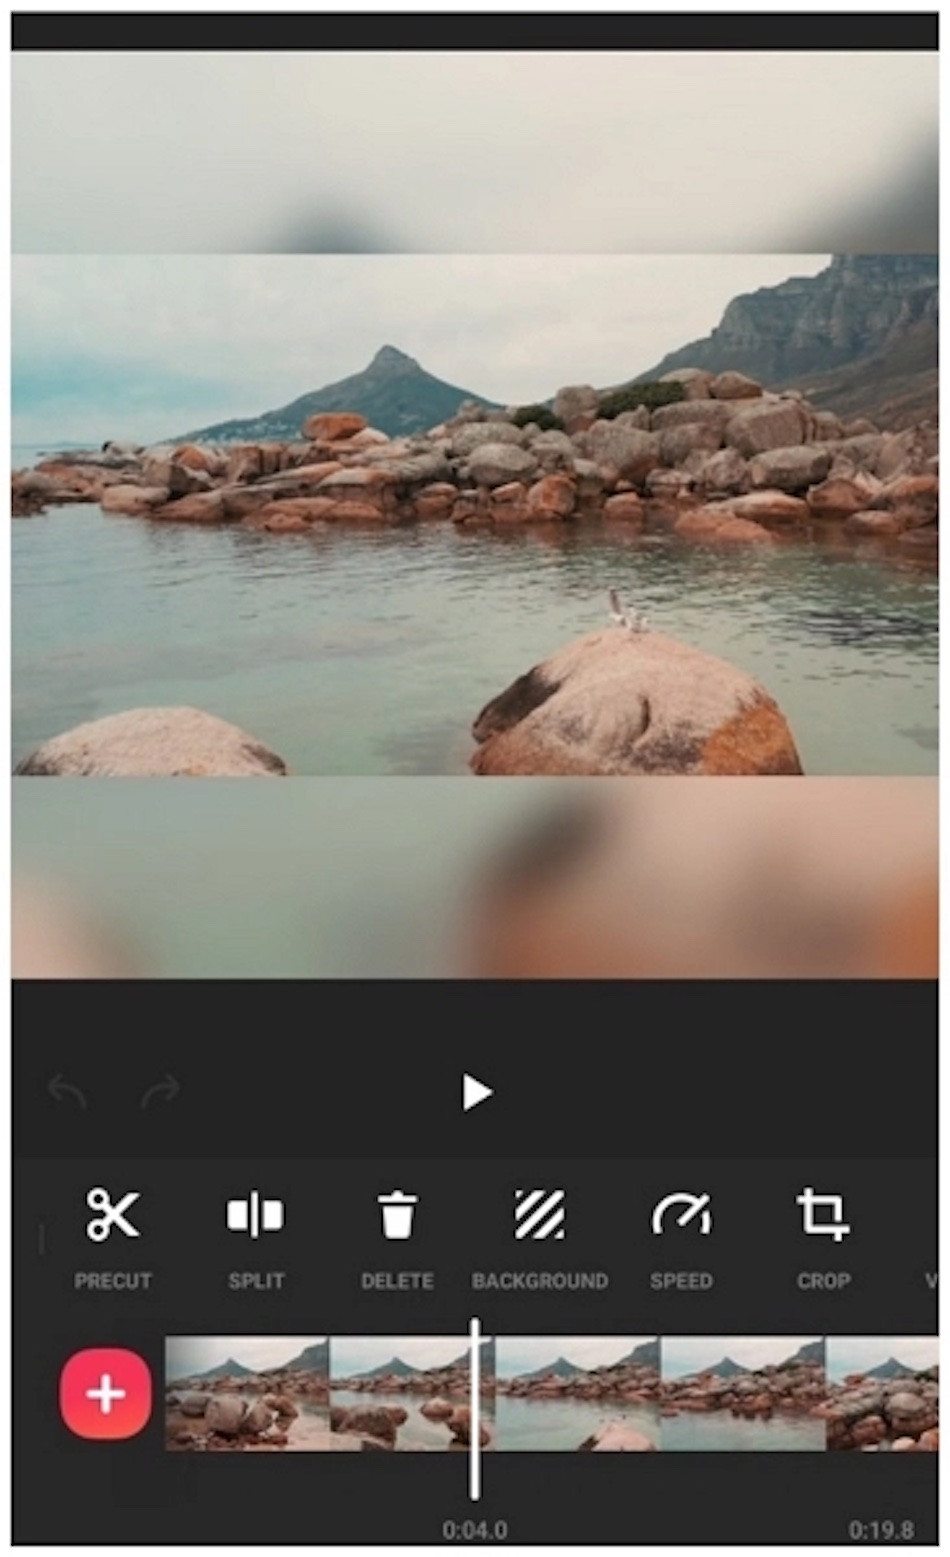 Interfața aplicației de editare video InShot arată o scenă de plajă și comenzi de editare.